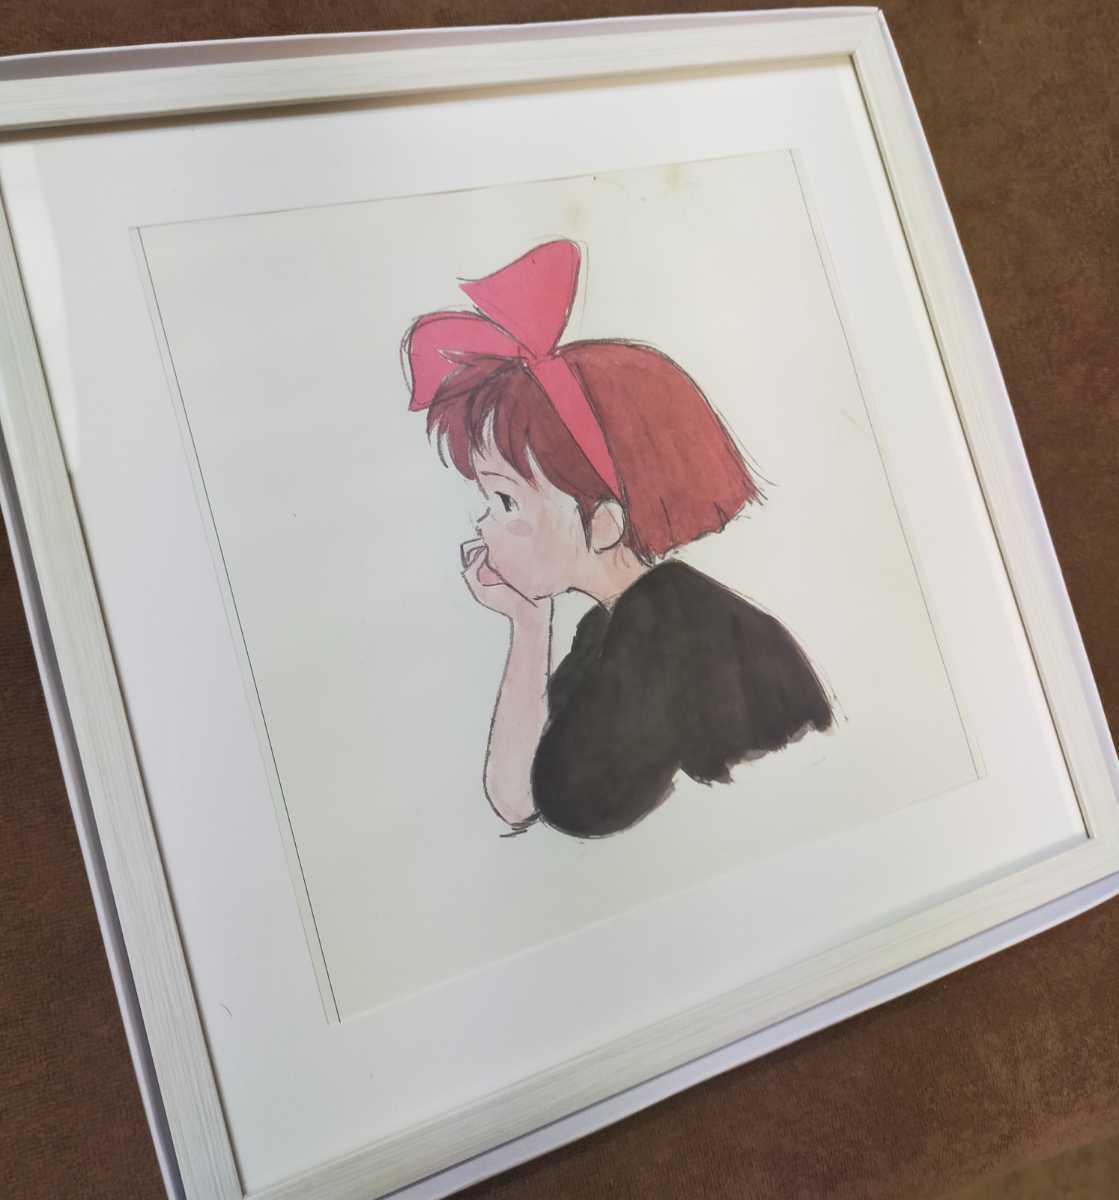 كبير جدًا [محدود 1] خدمة توصيل Studio Ghibli Kiki [عنصر مؤطر] منذ أكثر من 30 عامًا تقويم Ghibli Kiki Ken) نسخة طبق الأصل من لوحة Ghibli الفن الأصلي. بطاقة بريدية. هاياو ميازاكي, خط ما, كيكي لخدمة التوصيل, آحرون